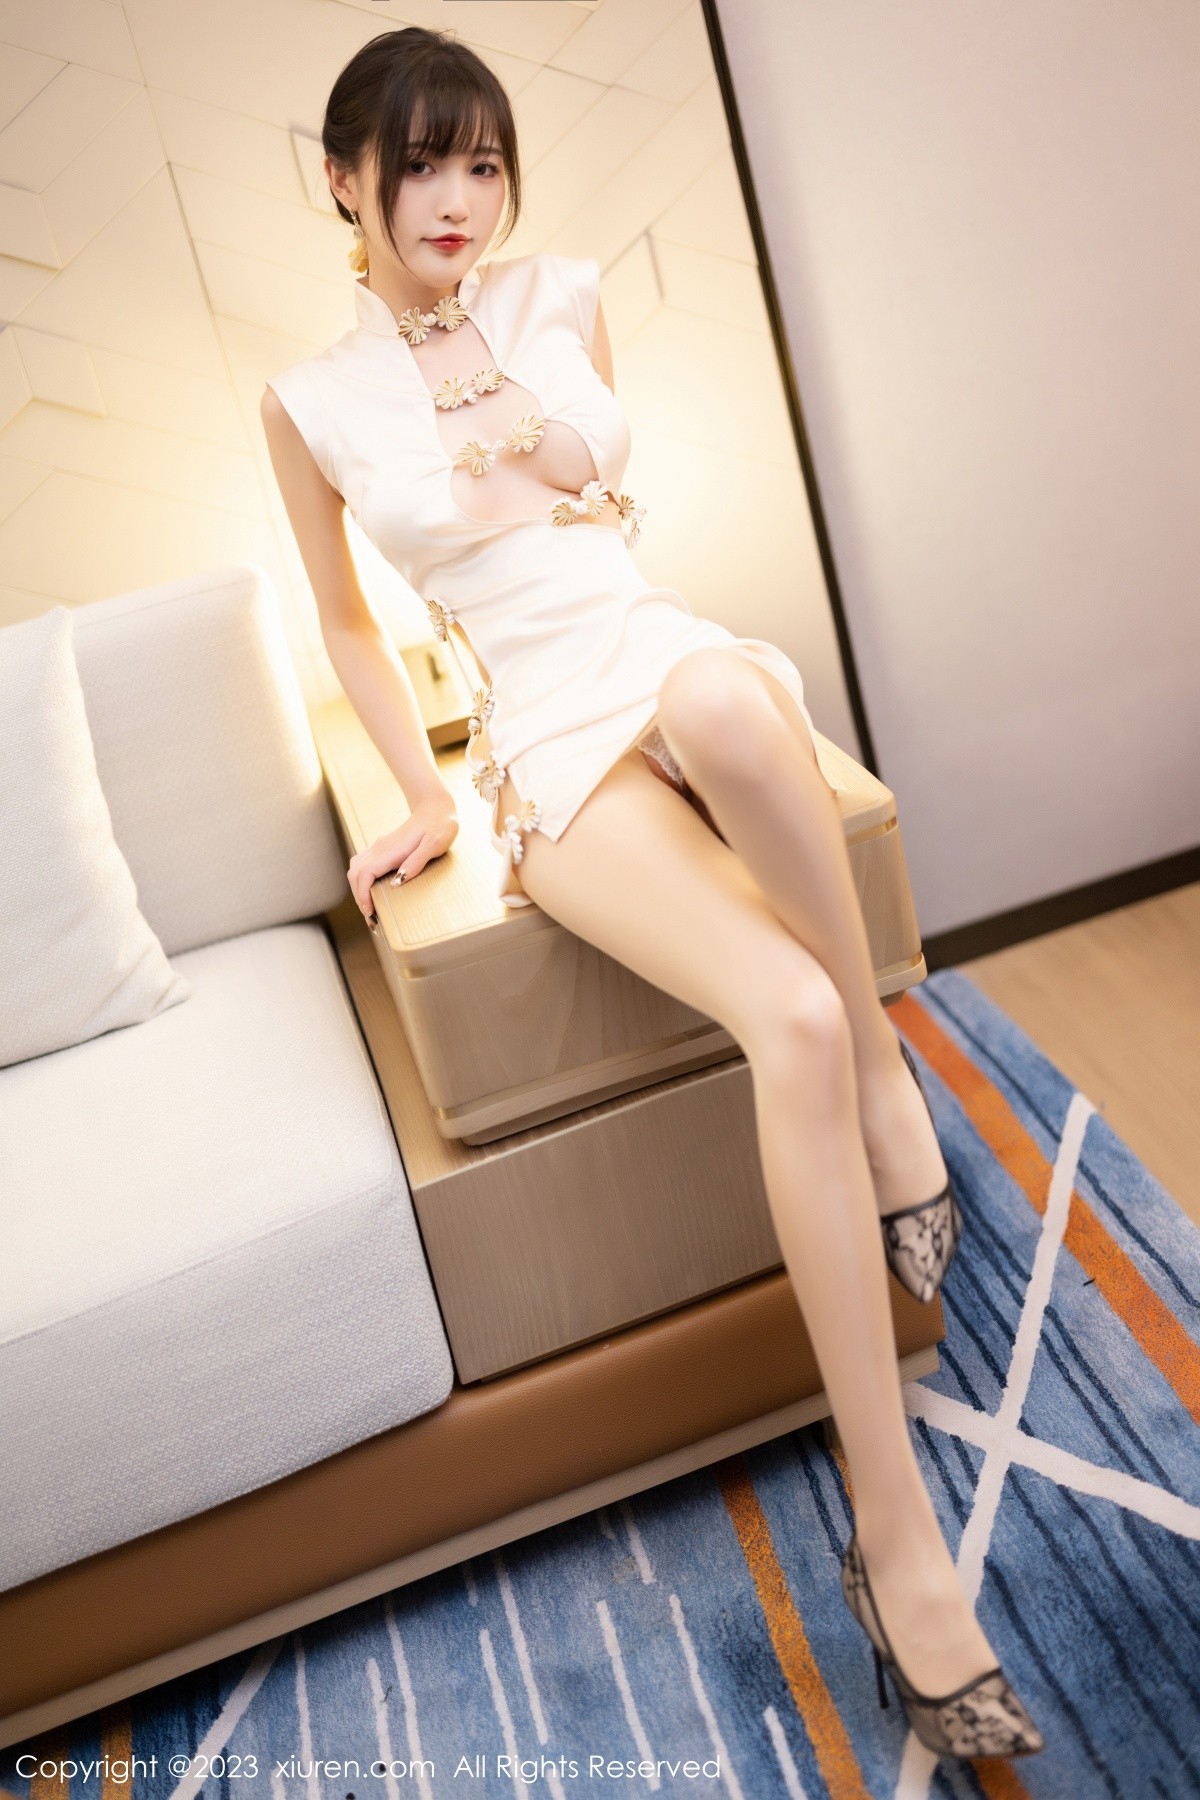 林星阑秀曼妙身姿迷人诱惑写真清纯美腿美女套图